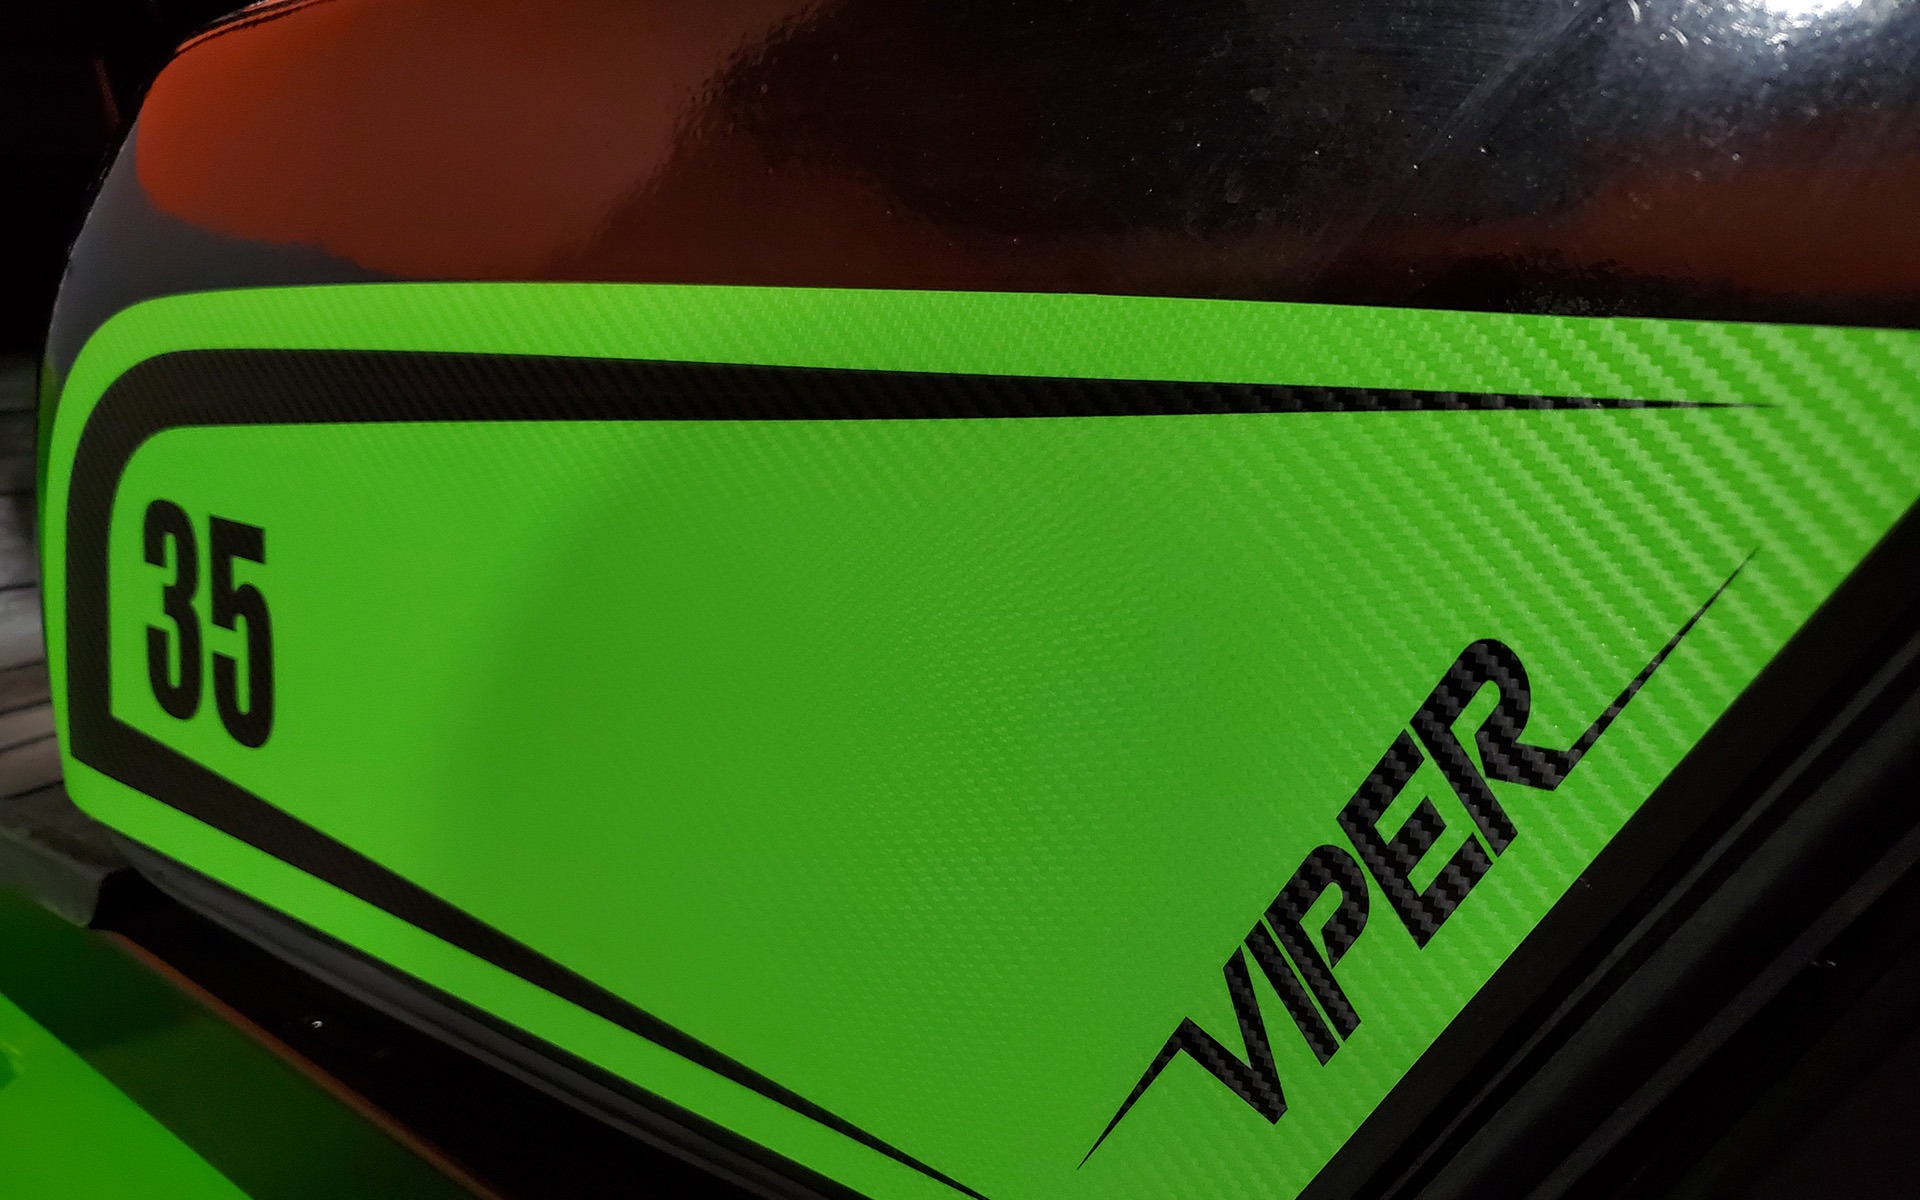 New 2022 VIPER RTD35  | Cary, IL